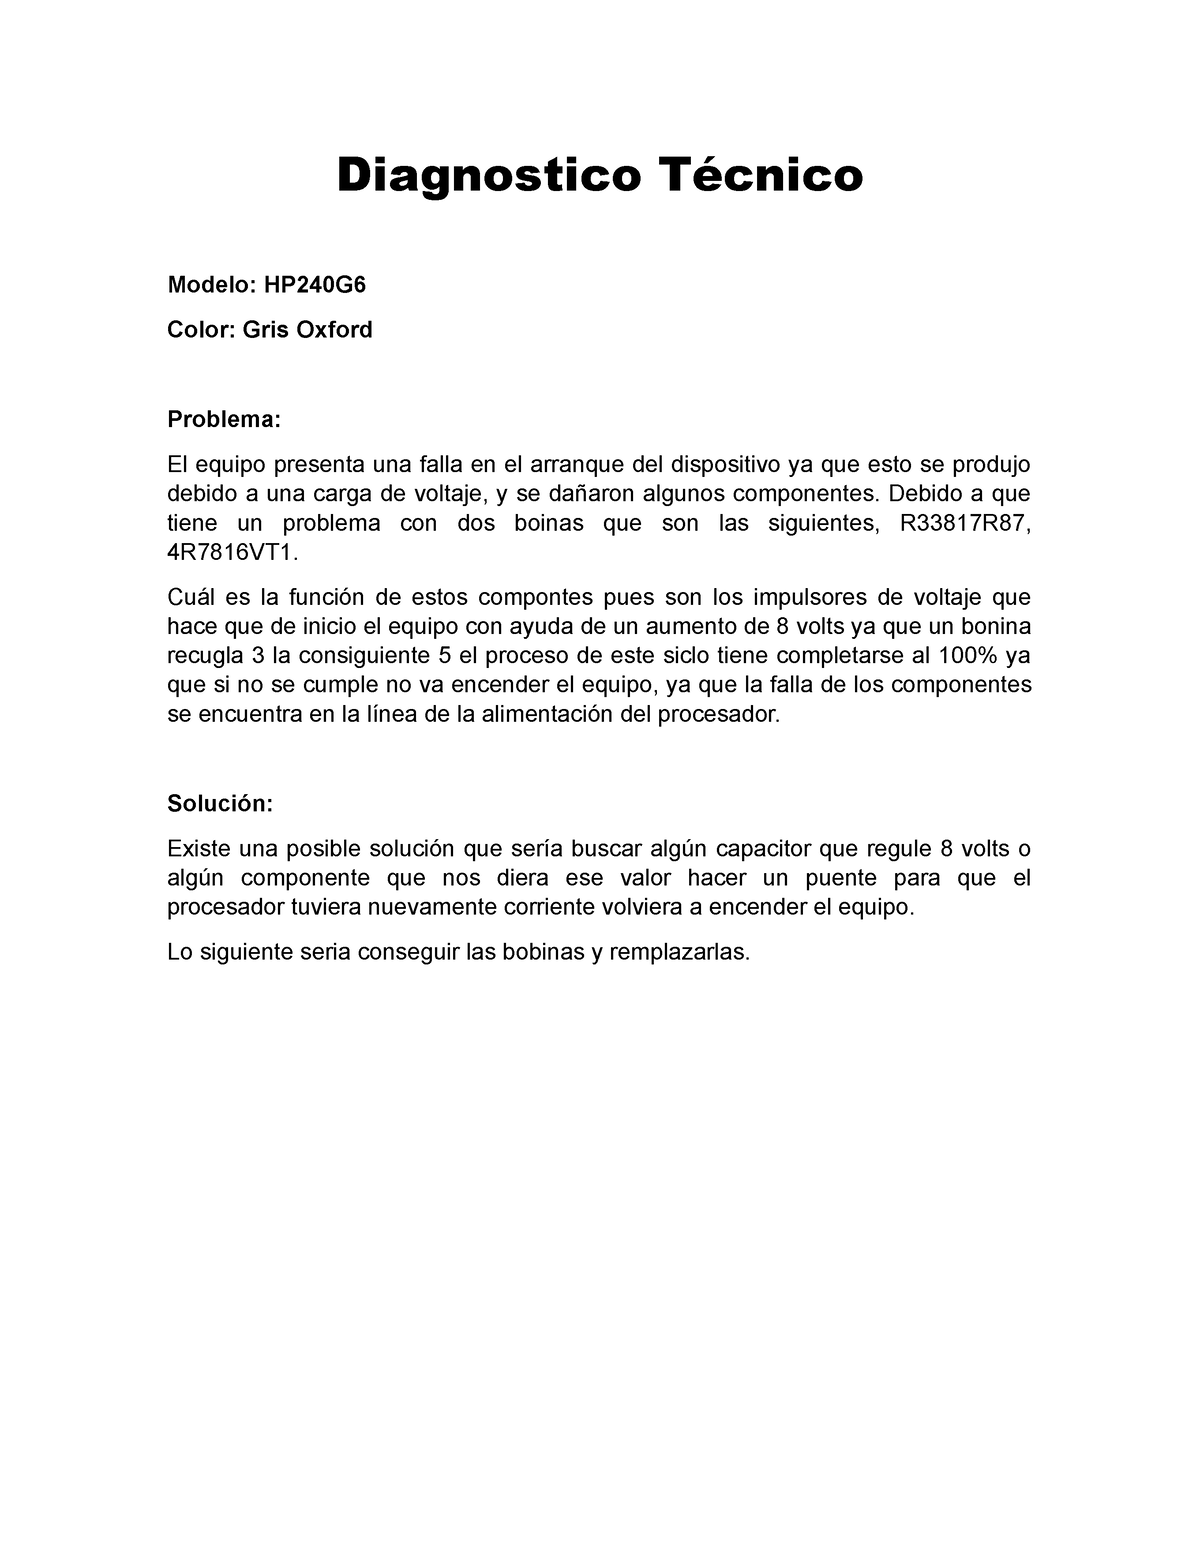 Diagnostico Técnico Reporte Tecnico Falla De Equipo De Computo Diagnostico Técnico Modelo 7787